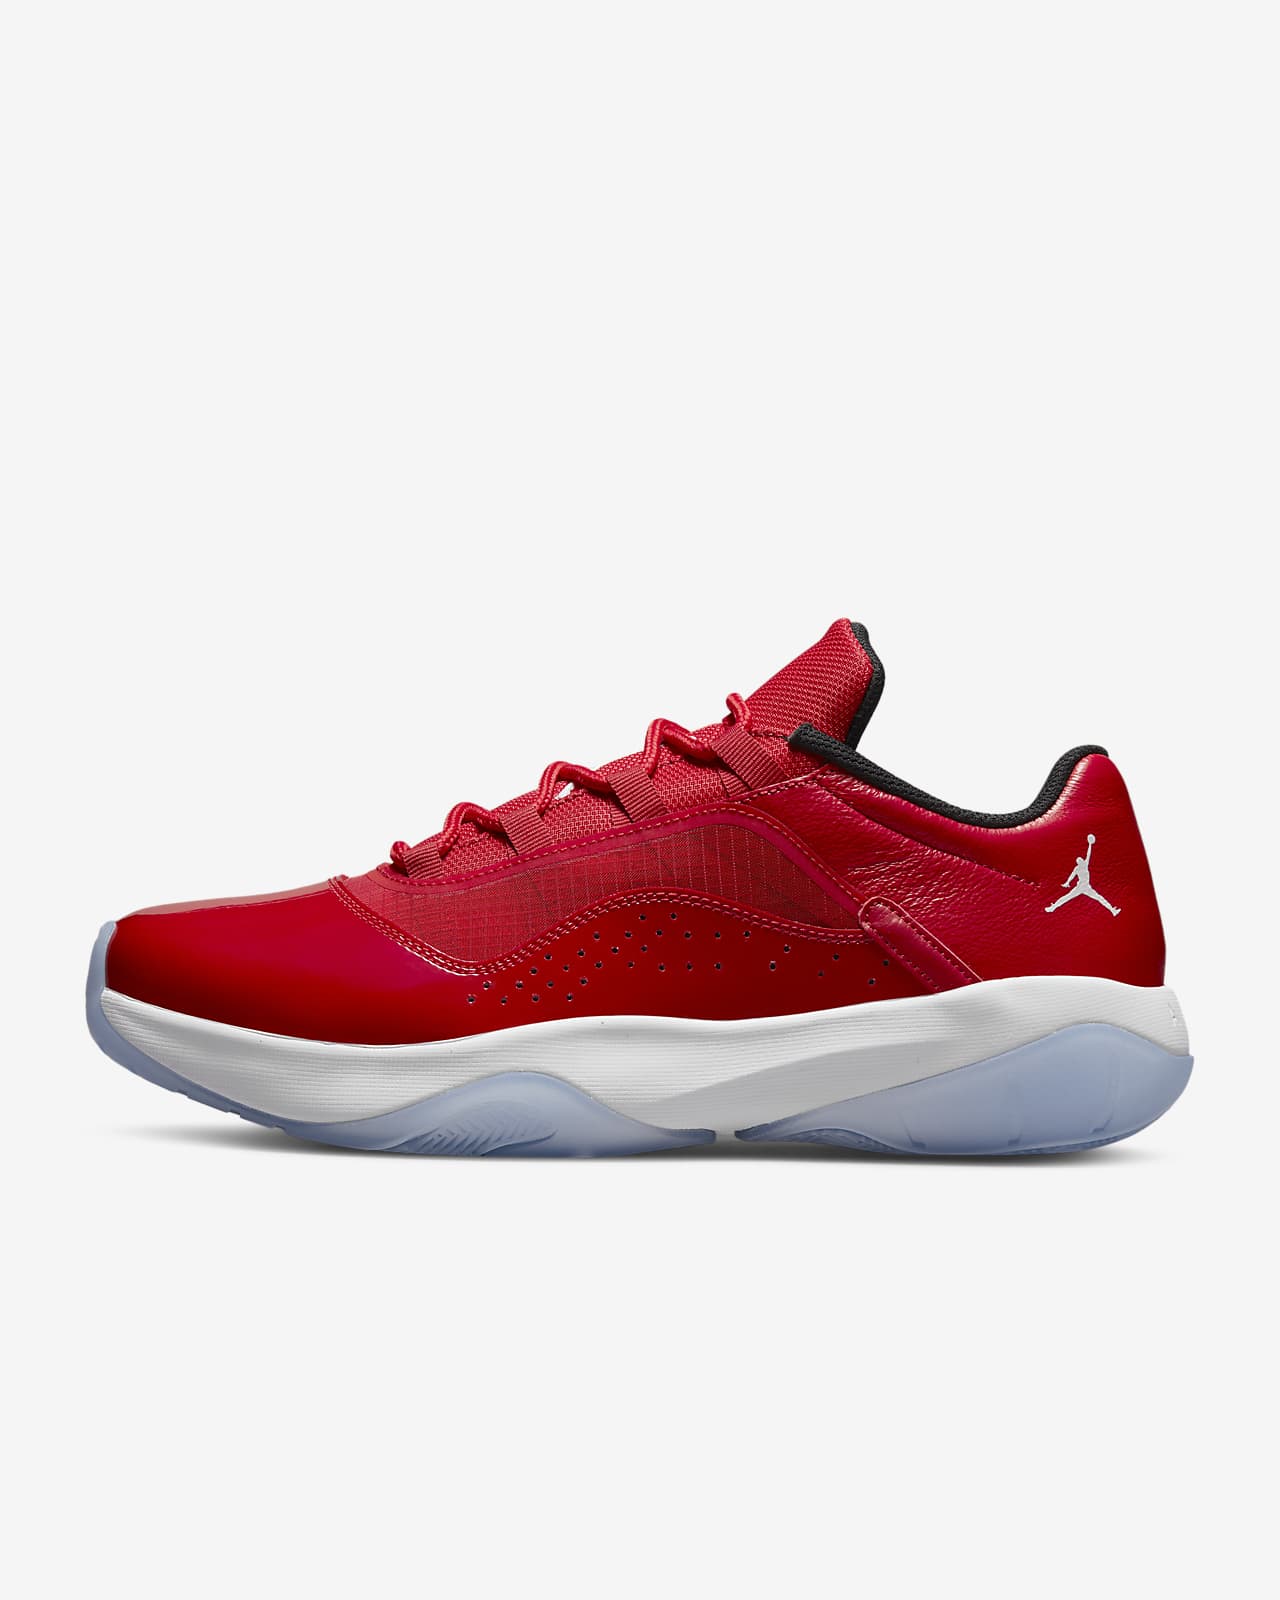 Air Jordan 11 Low University Red Women's Shoe